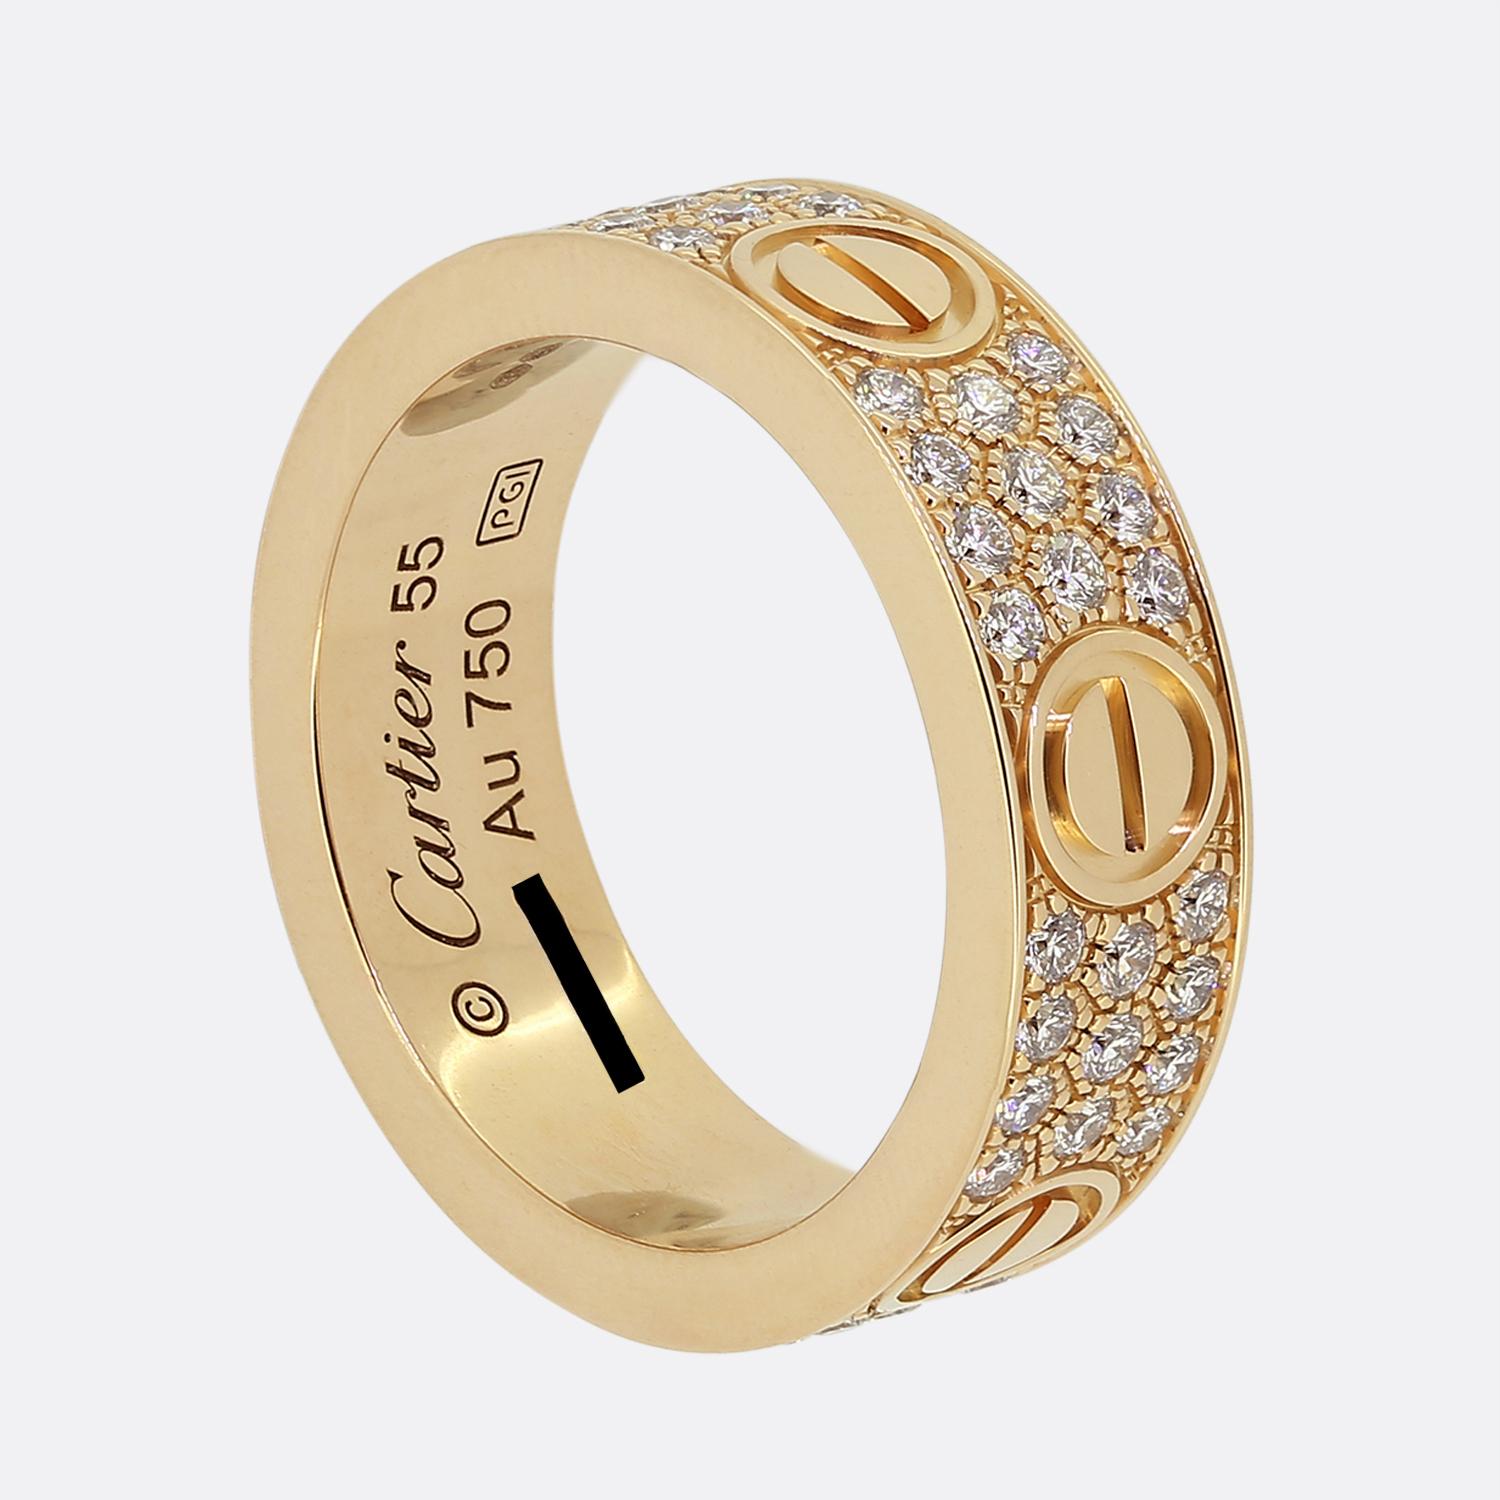 Hier haben wir einen Ring aus 18 Karat Roségold aus dem weltbekannten Luxusschmuckhaus Cartier. Dieser Ring ist Teil der LOVE-Kollektion und zeichnet sich durch ein einheitliches, abwechselndes Design aus, das sich über das gesamte Band erstreckt